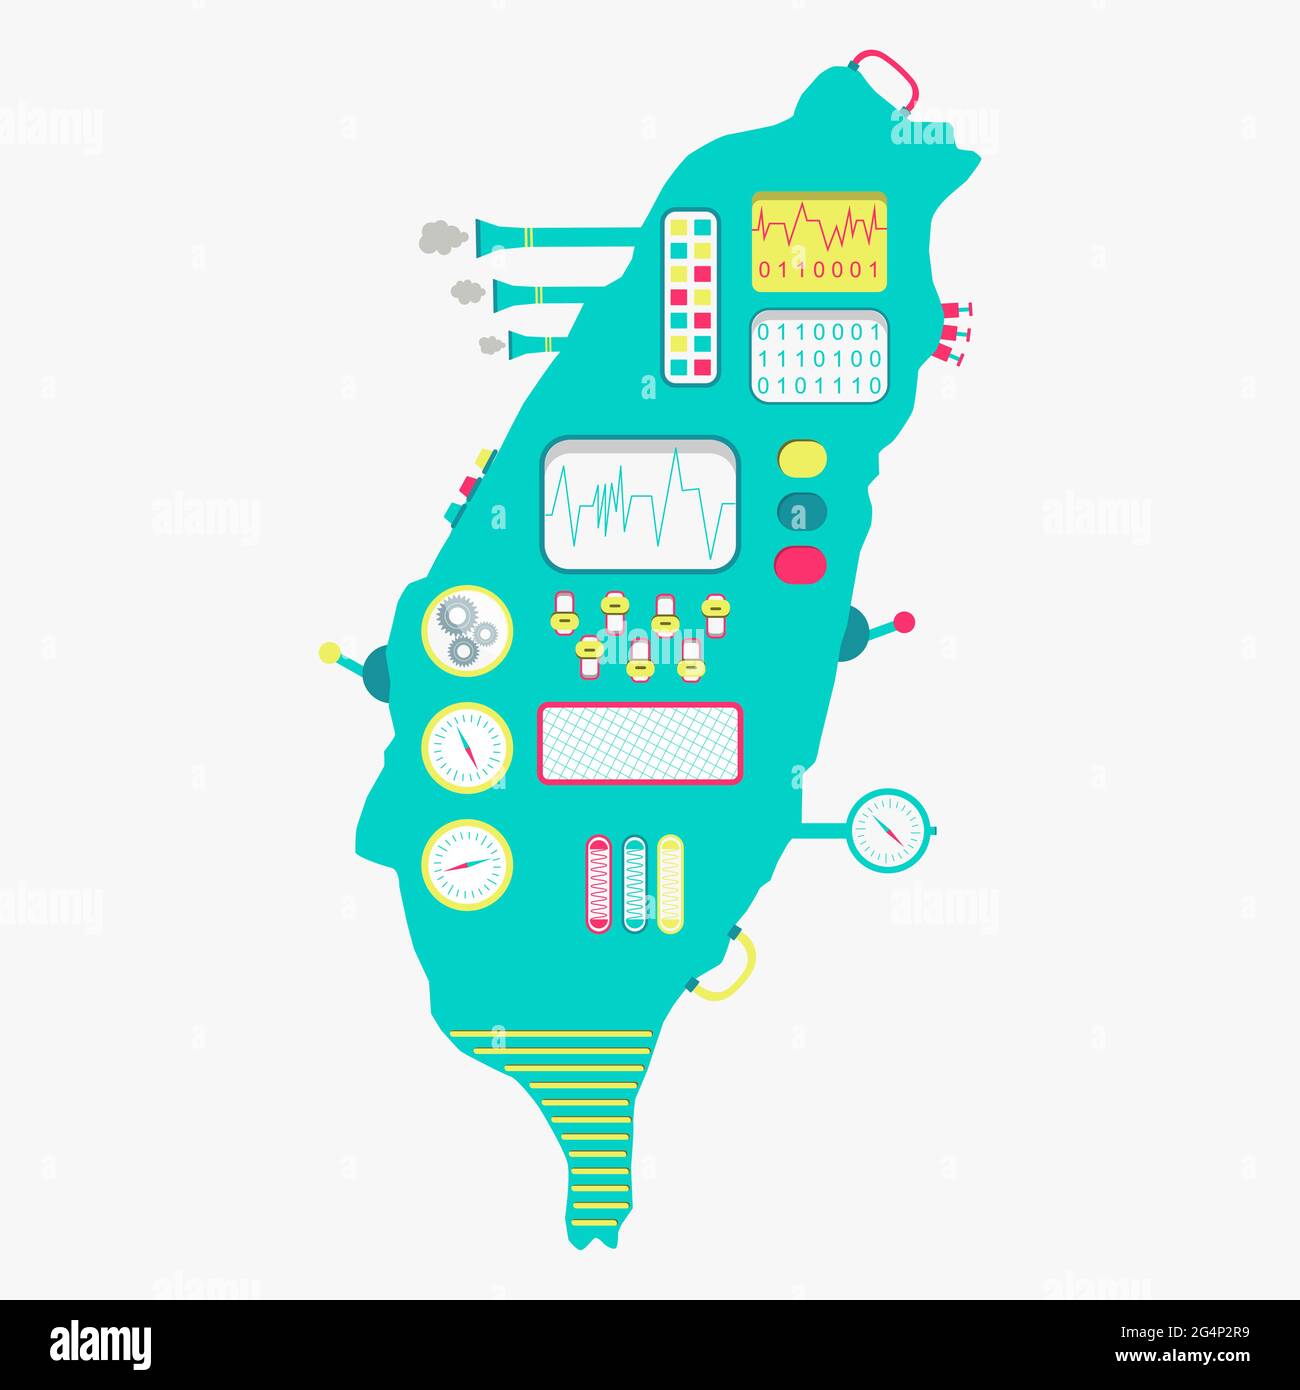 Karte von Taiwan wie eine niedliche Maschine mit Knöpfen, Tafeln und Hebeln. Isoliert. Weißer Hintergrund. Stock Vektor